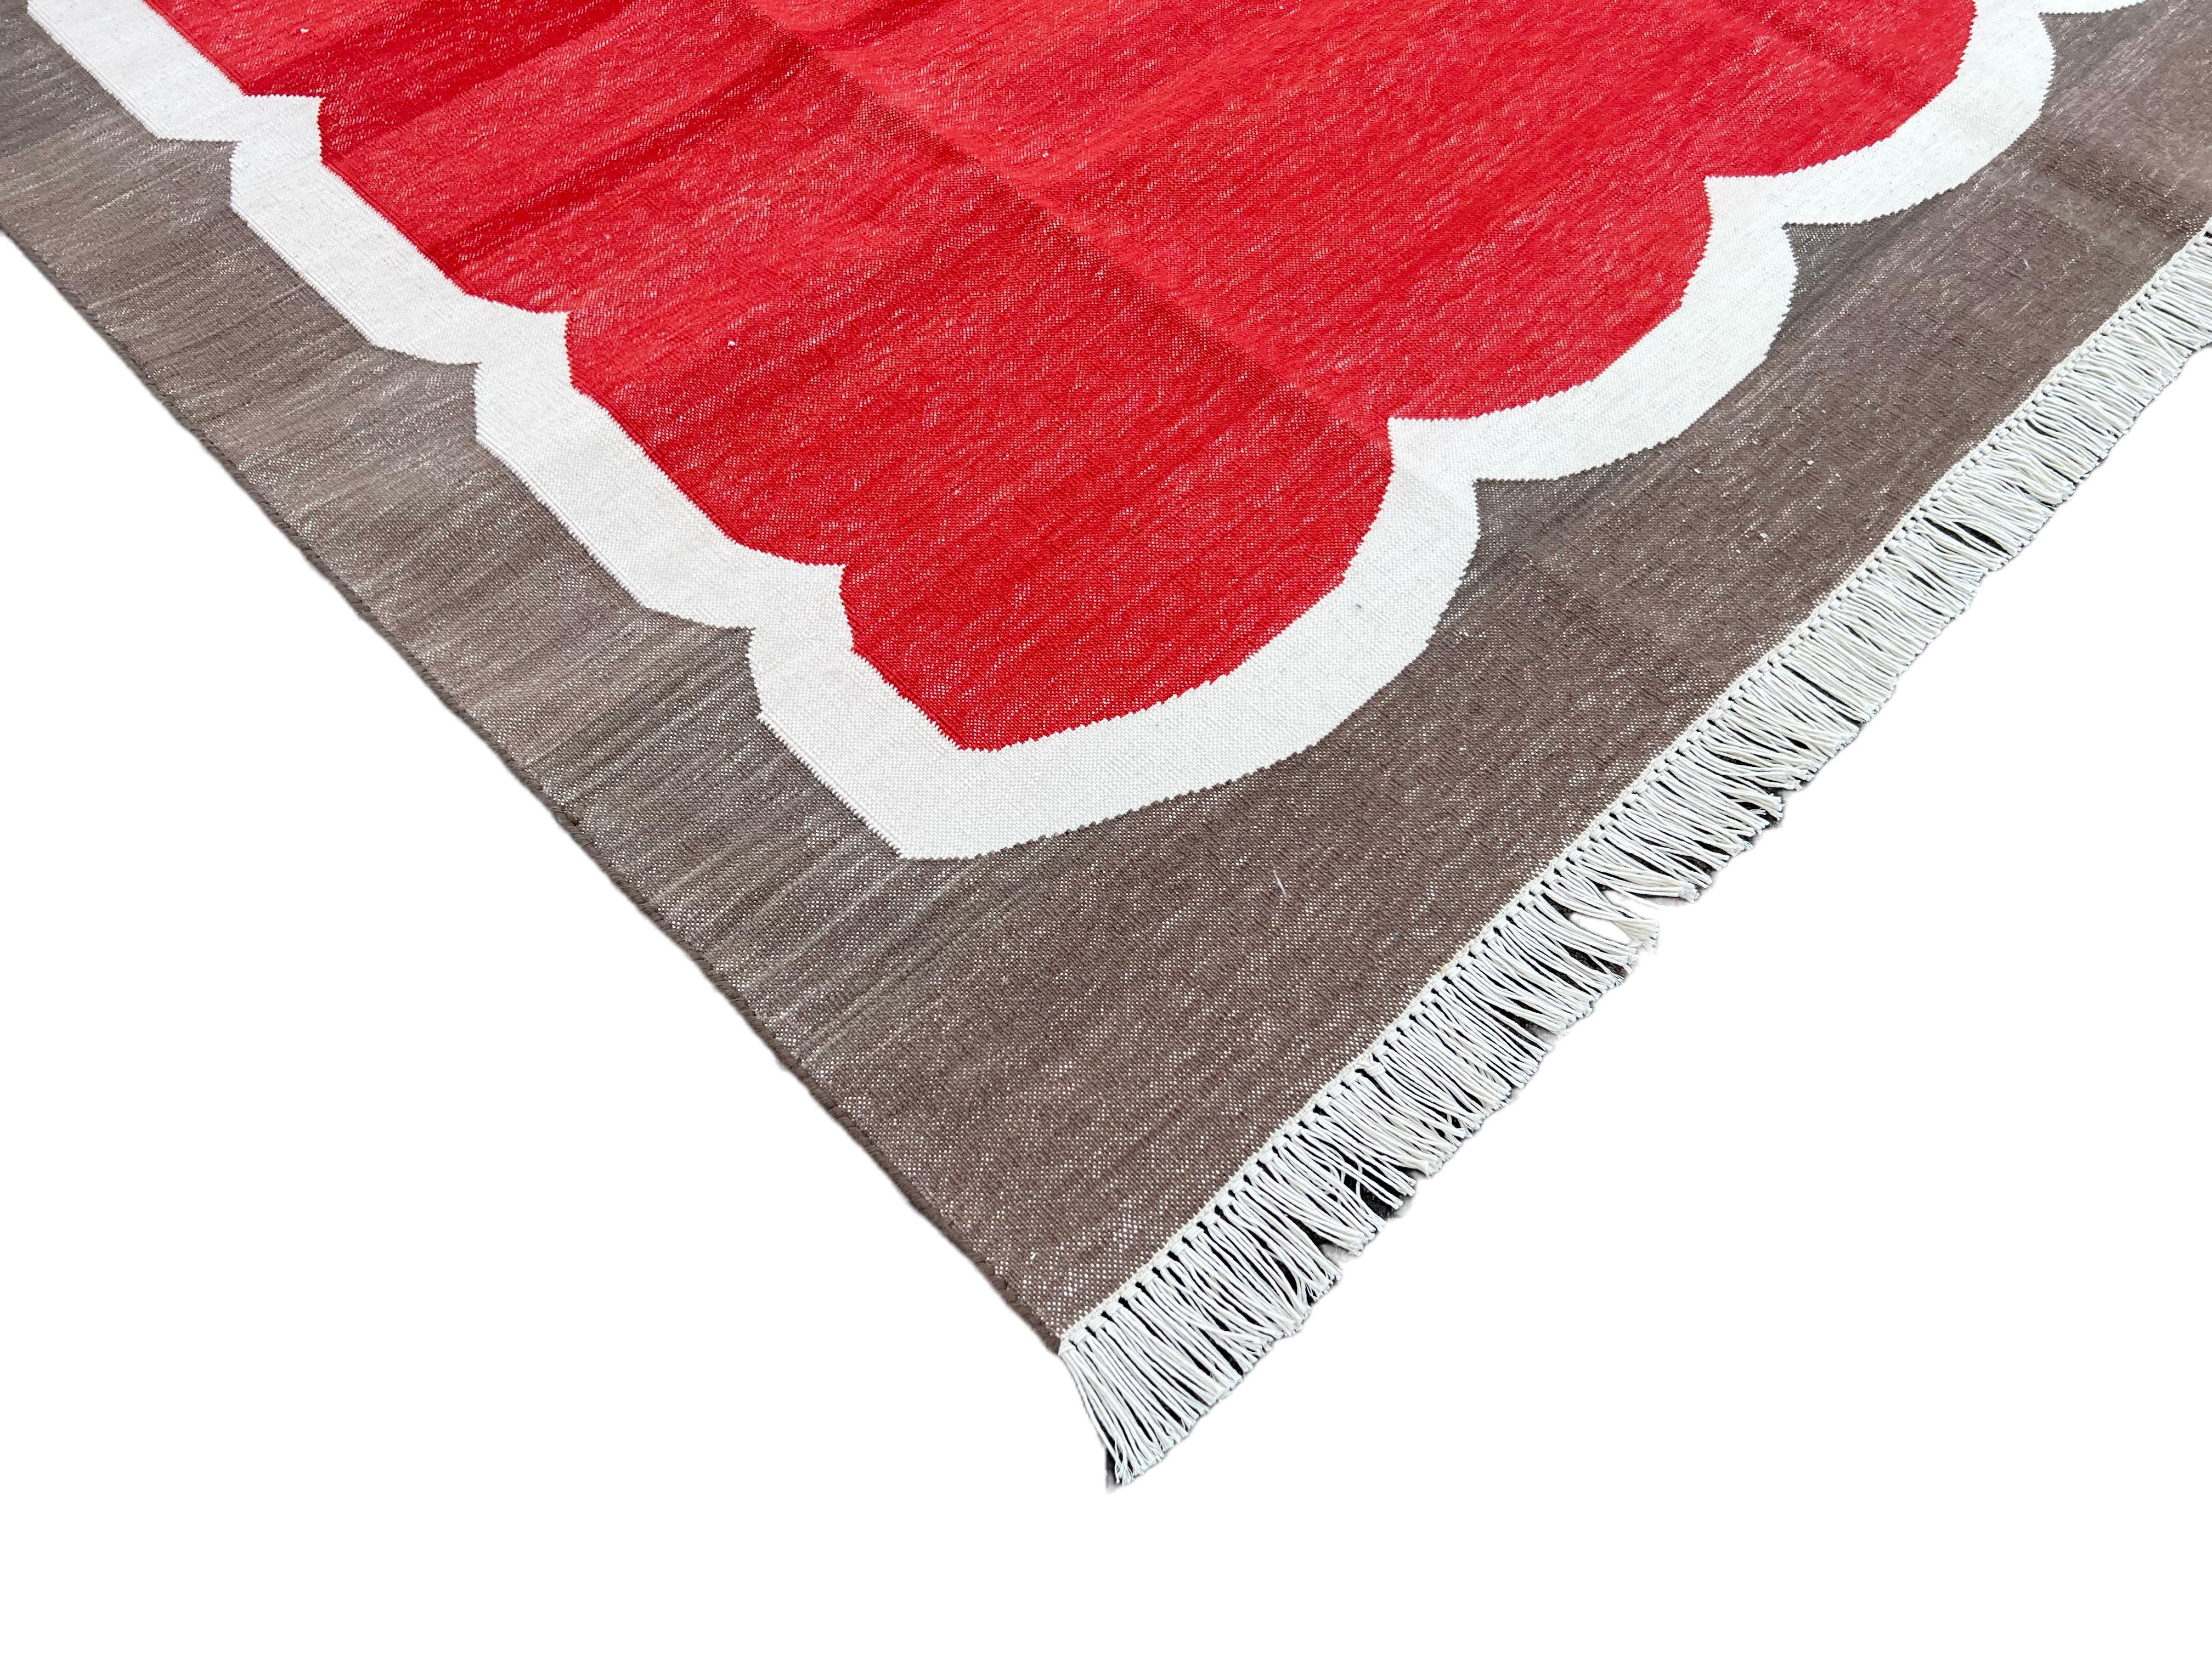 Baumwolle pflanzlich gefärbt Rot, Creme und Braun mit Wellenschliff gestreiften indischen Dhurrie Teppich-5'x7' 
Diese speziellen flachgewebten Dhurries werden aus 15-fachem Garn aus 100% Baumwolle handgewebt. Aufgrund der speziellen